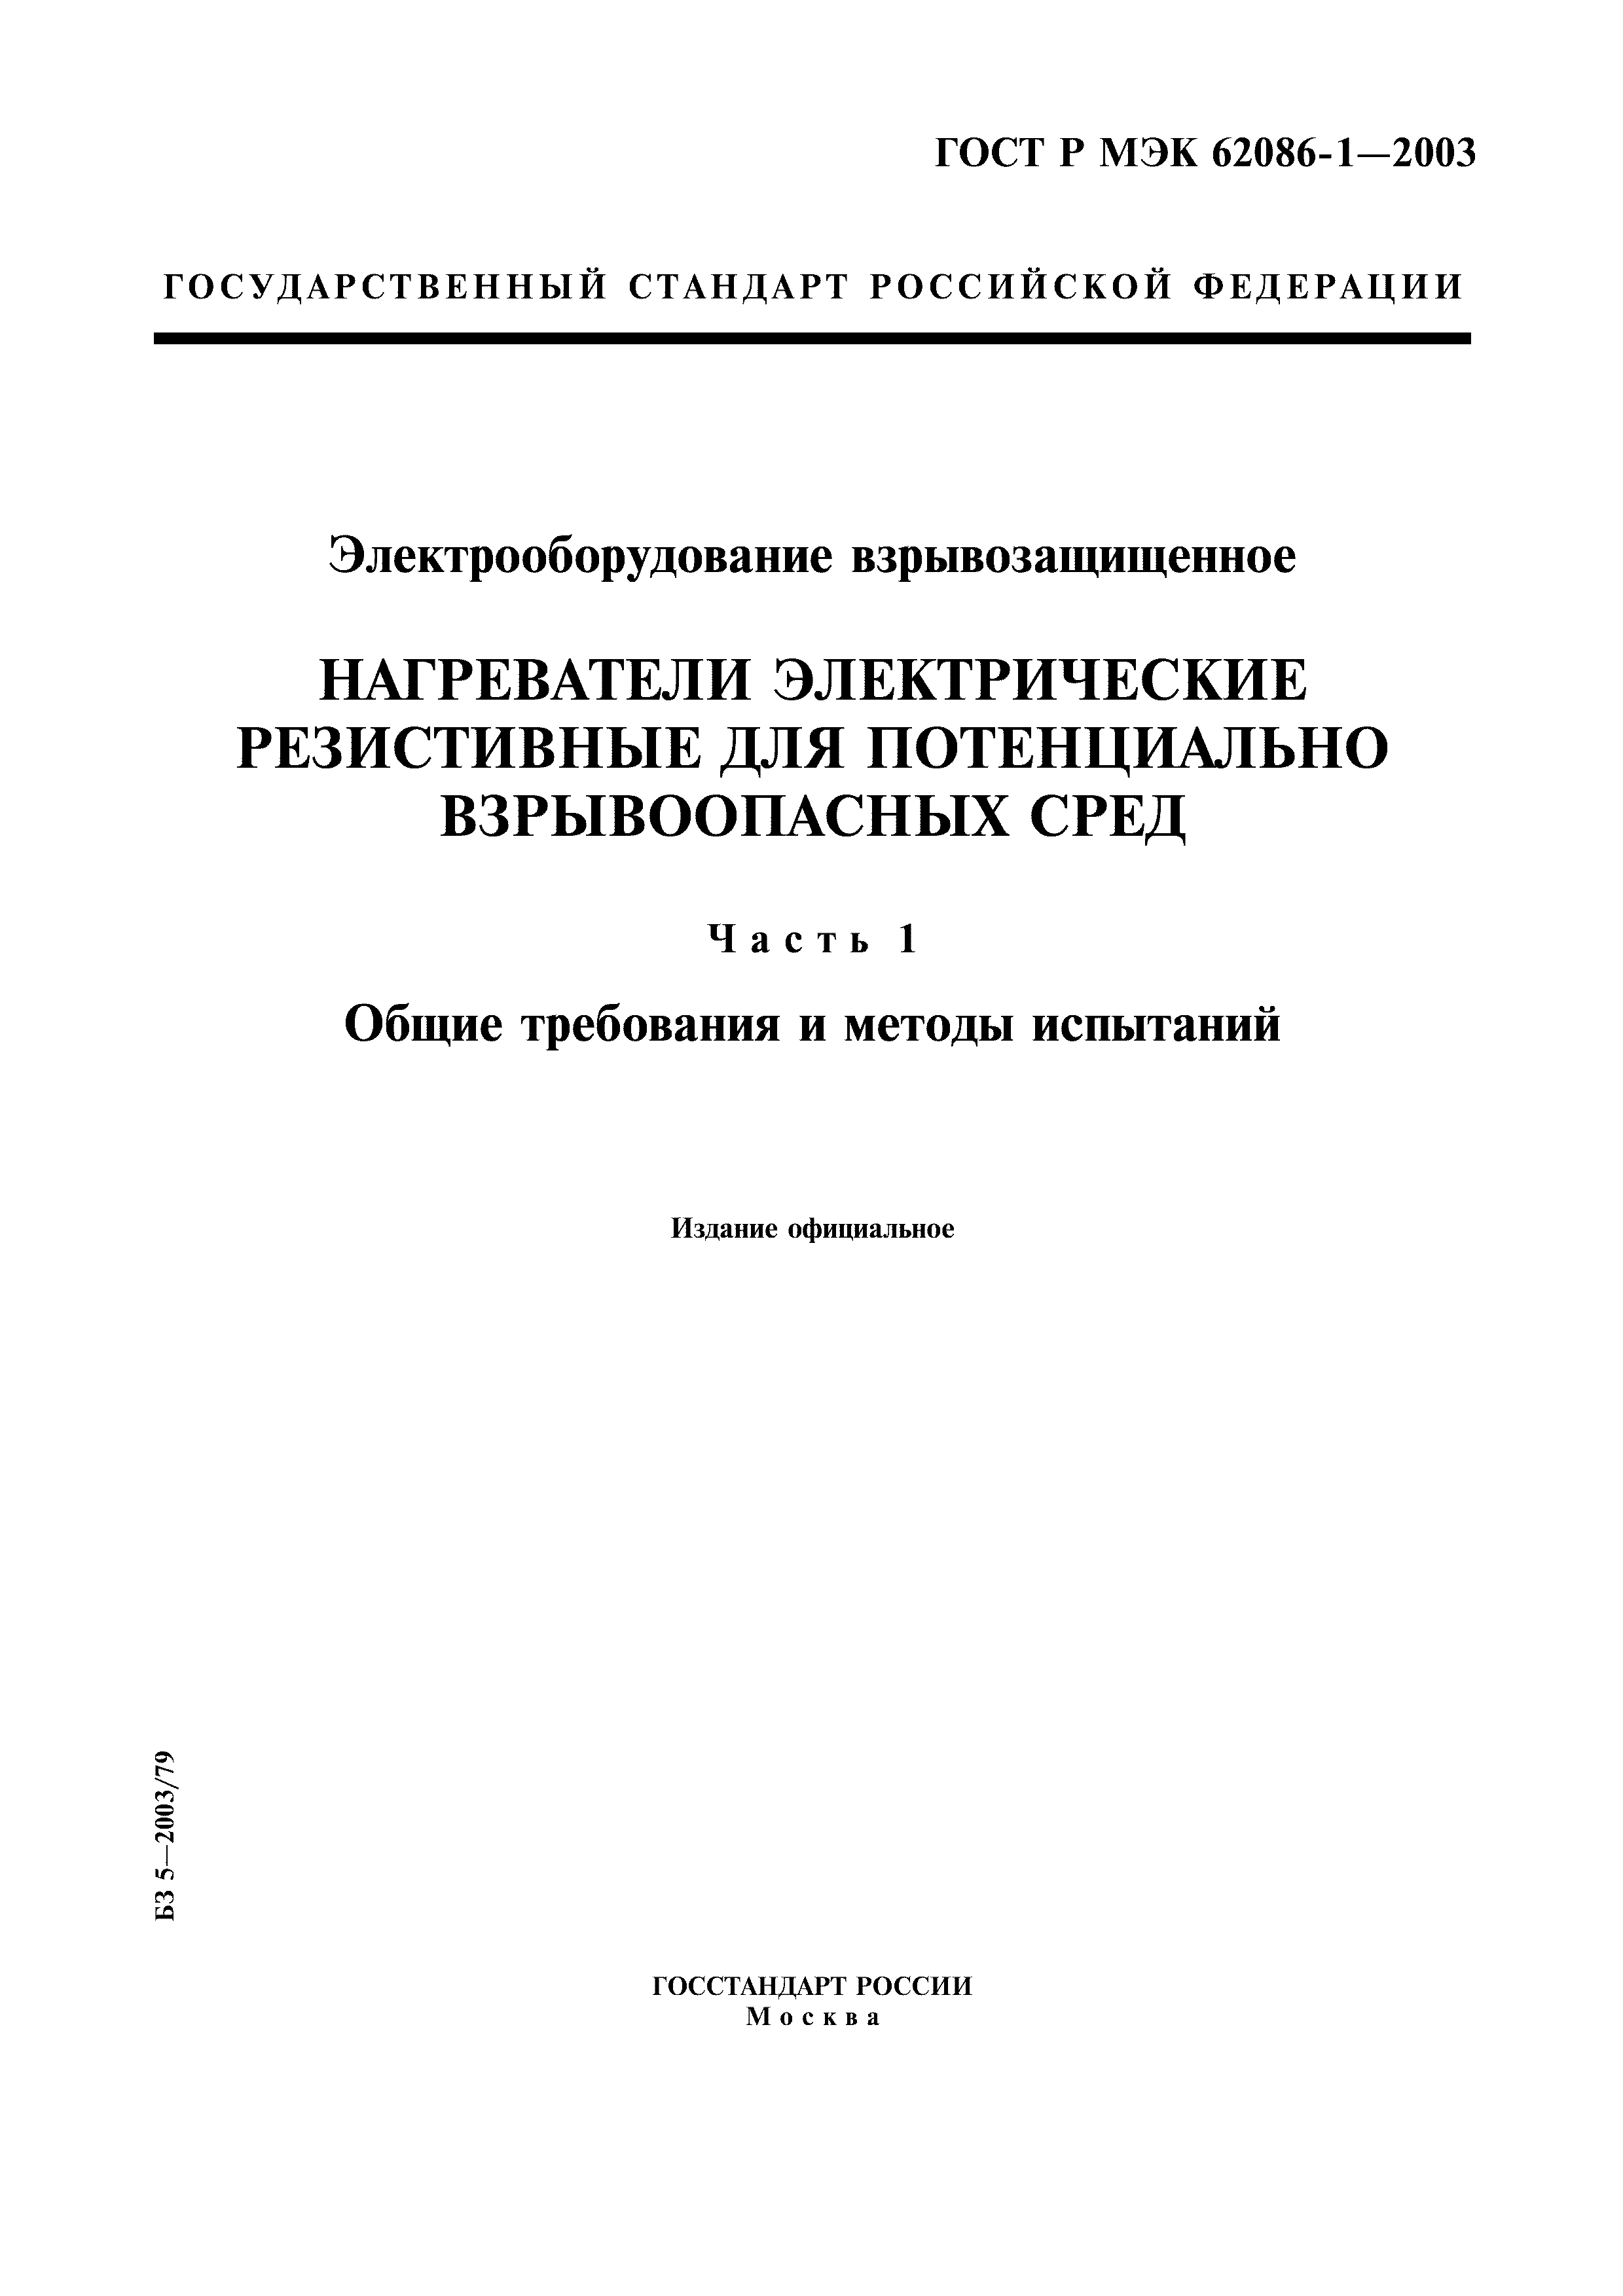 ГОСТ Р МЭК 62086-1-2003